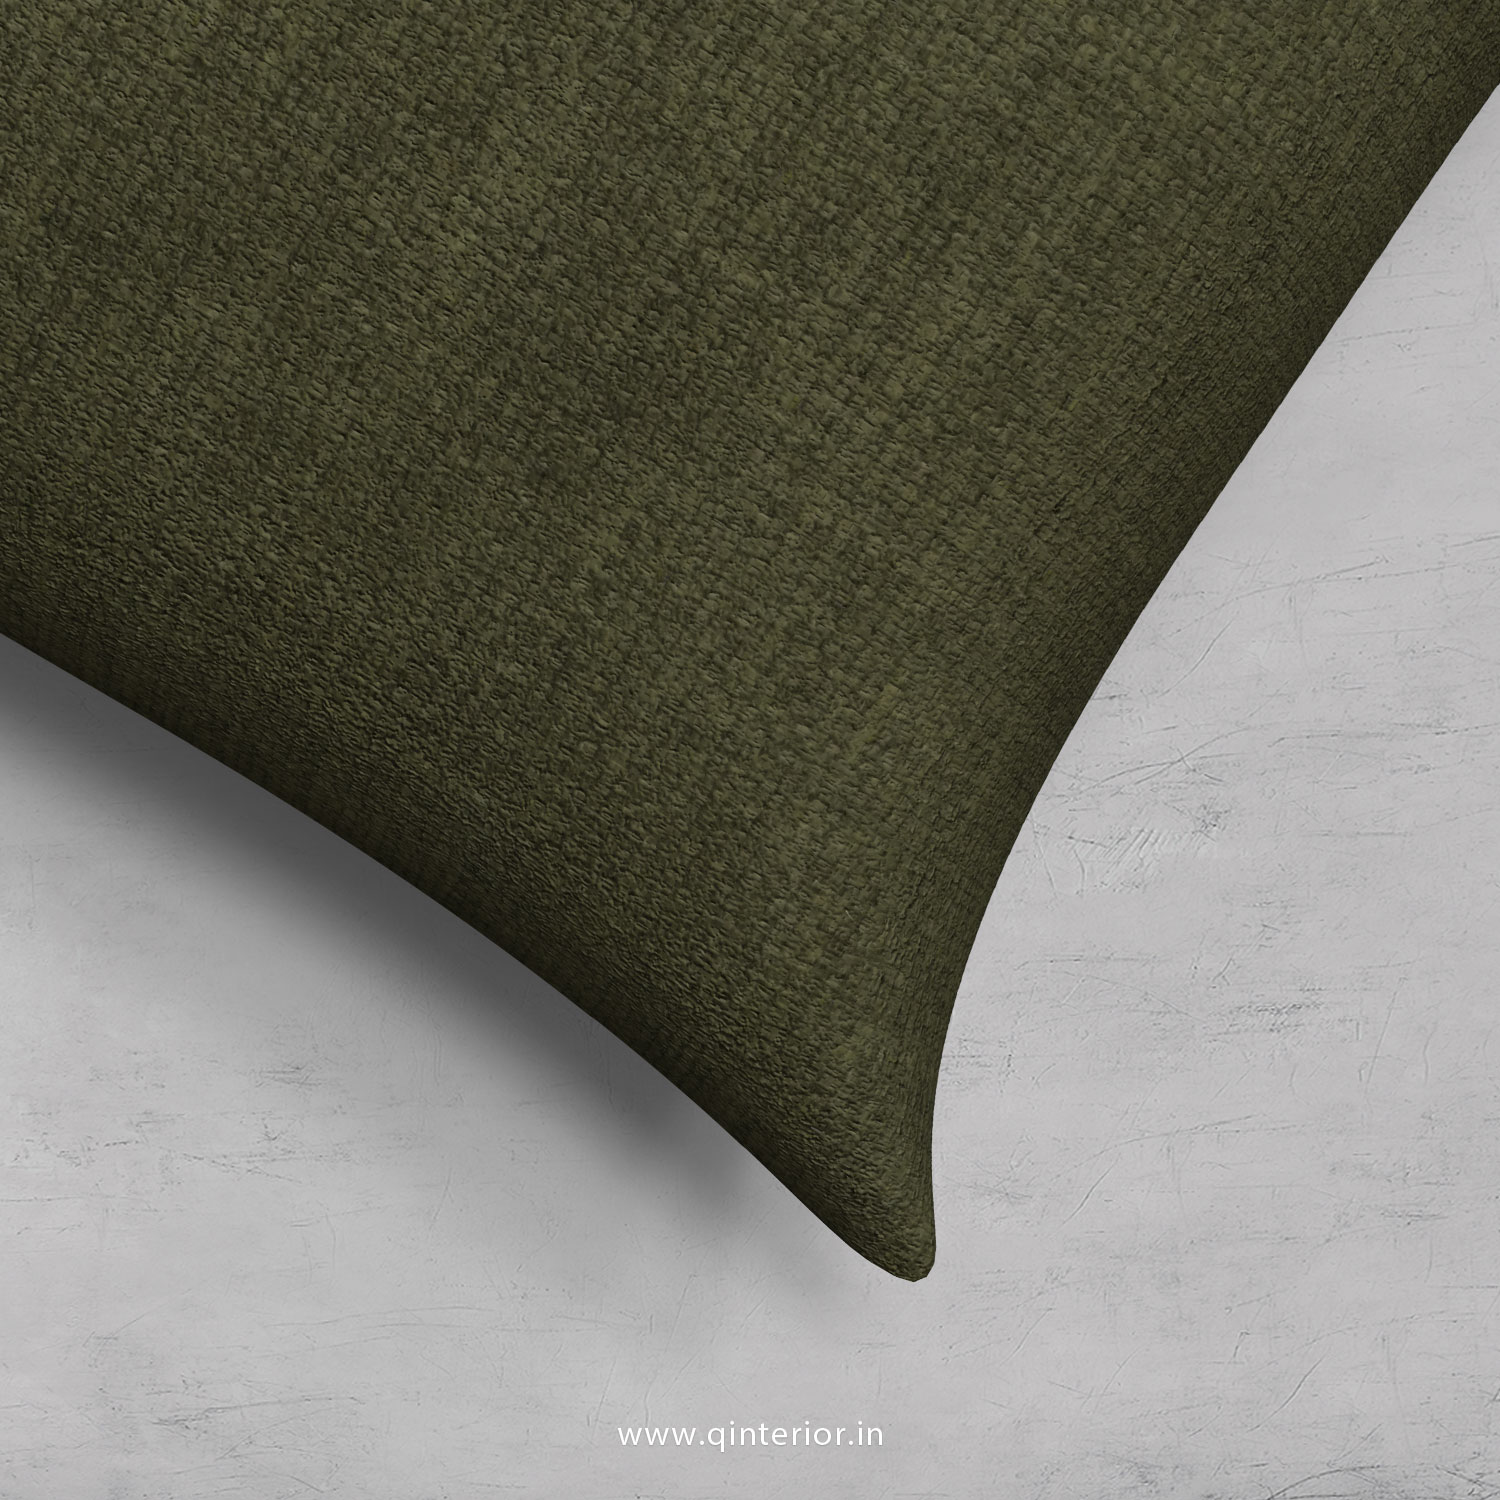 Cushion With Cushion Cover in Cotton Plain - CUS001 CP20